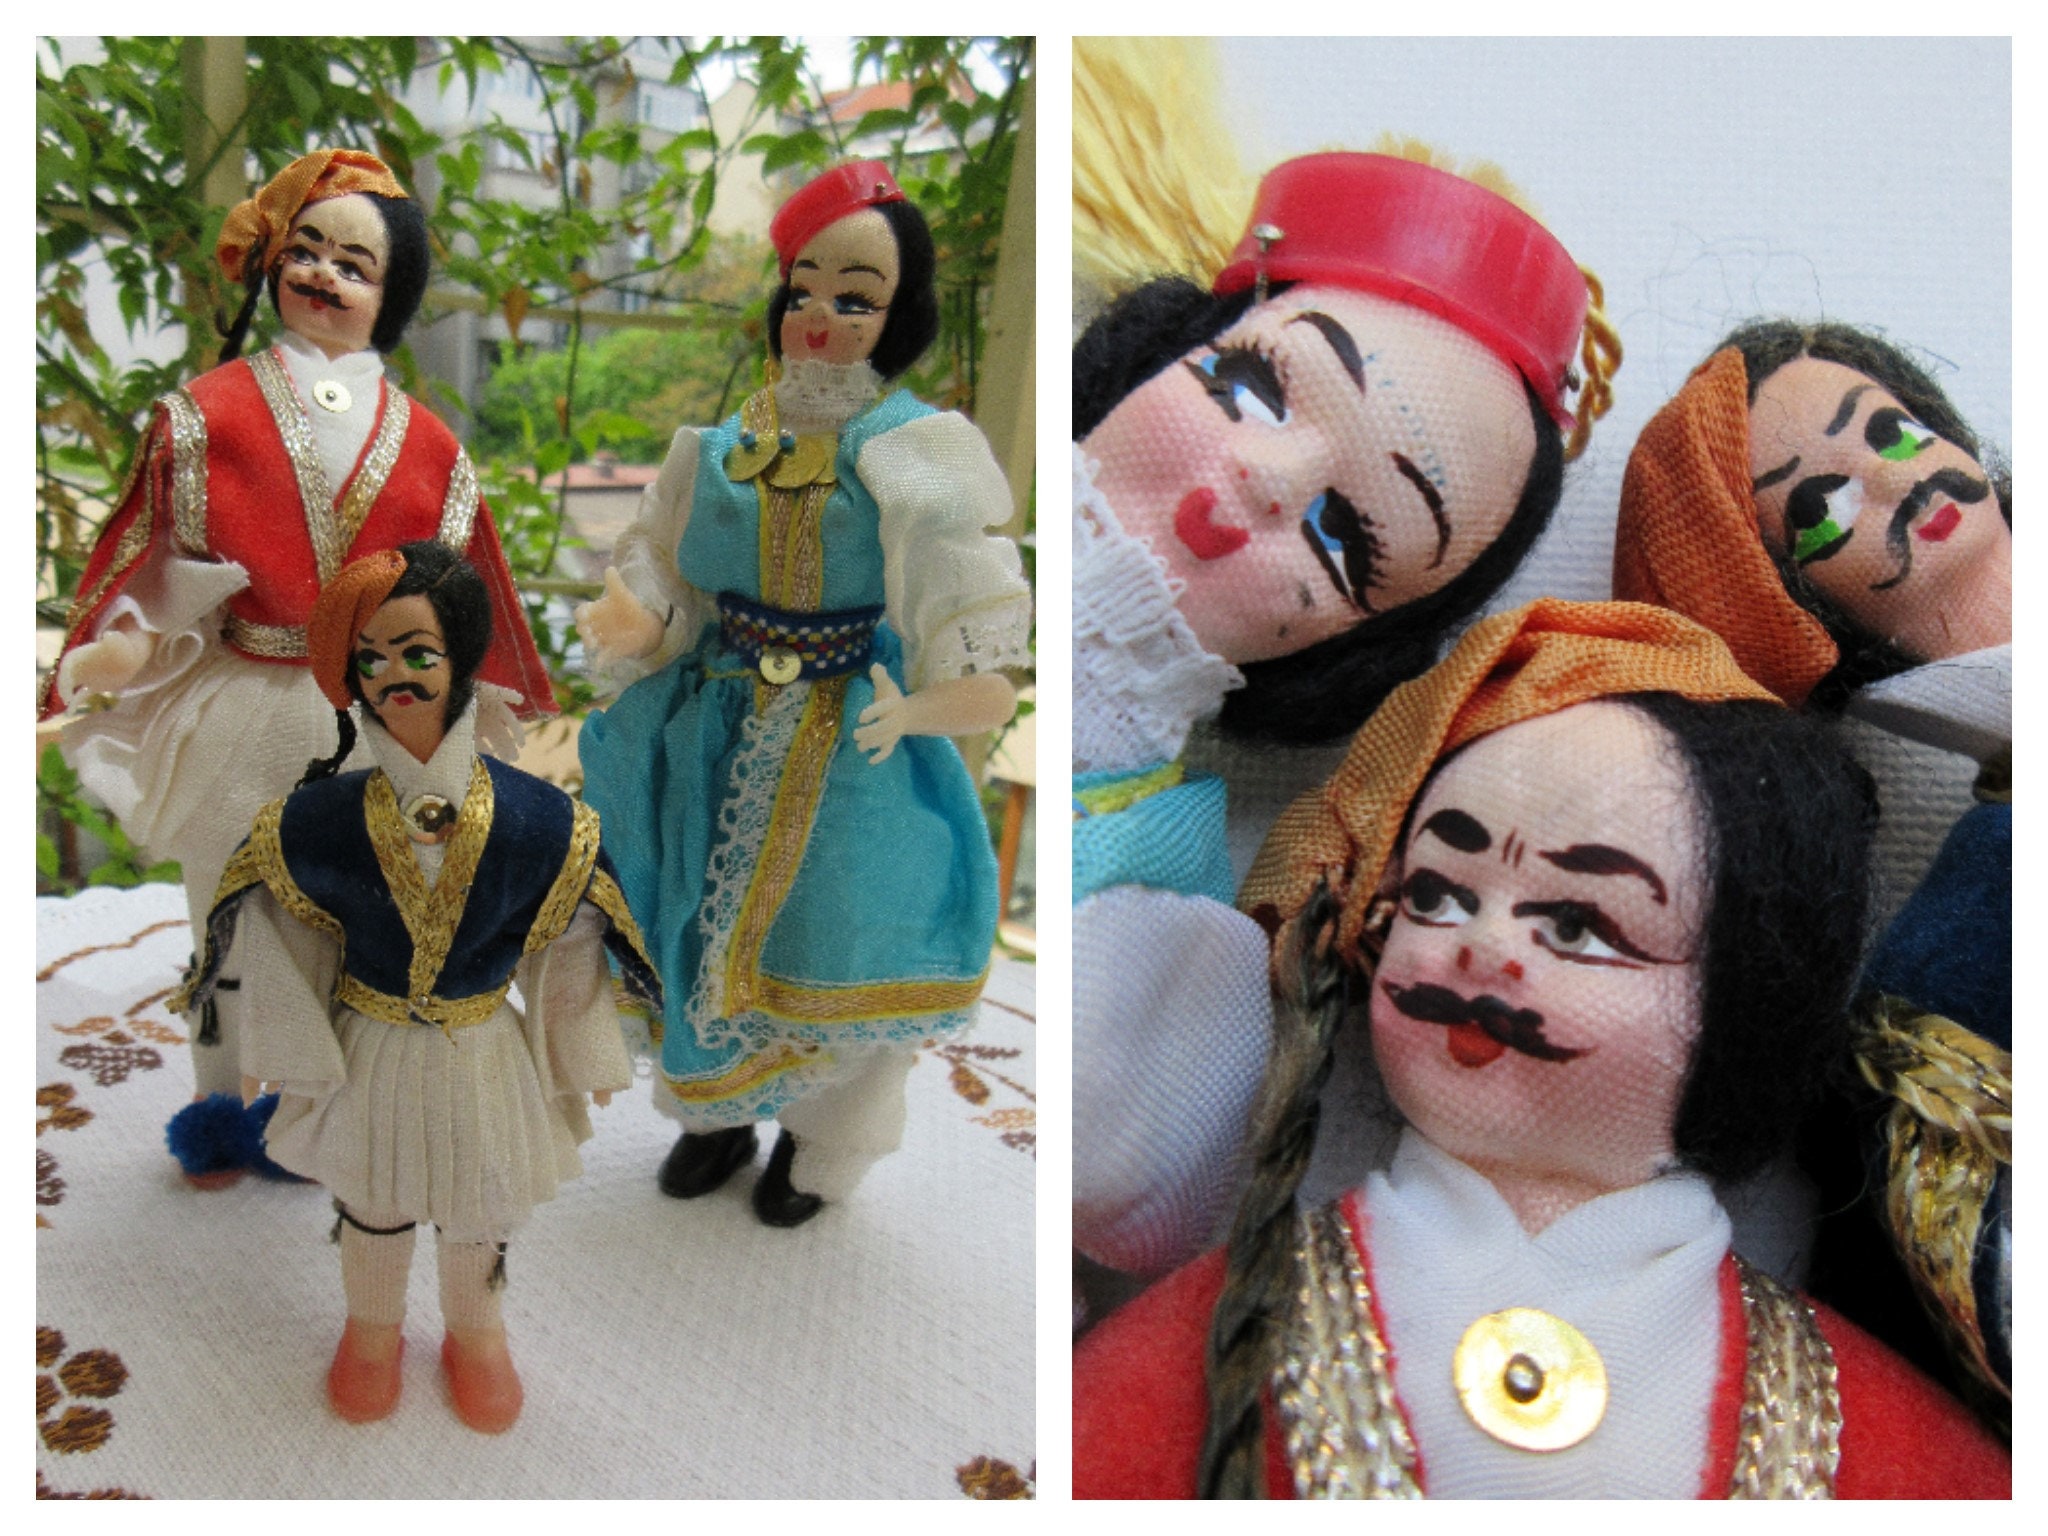 Poupée d'art folklorique turque, poupée/ornement souvenir antique/vintage  en costume traditionnel de Turquie, détails faits main et cousus à la main  -  France